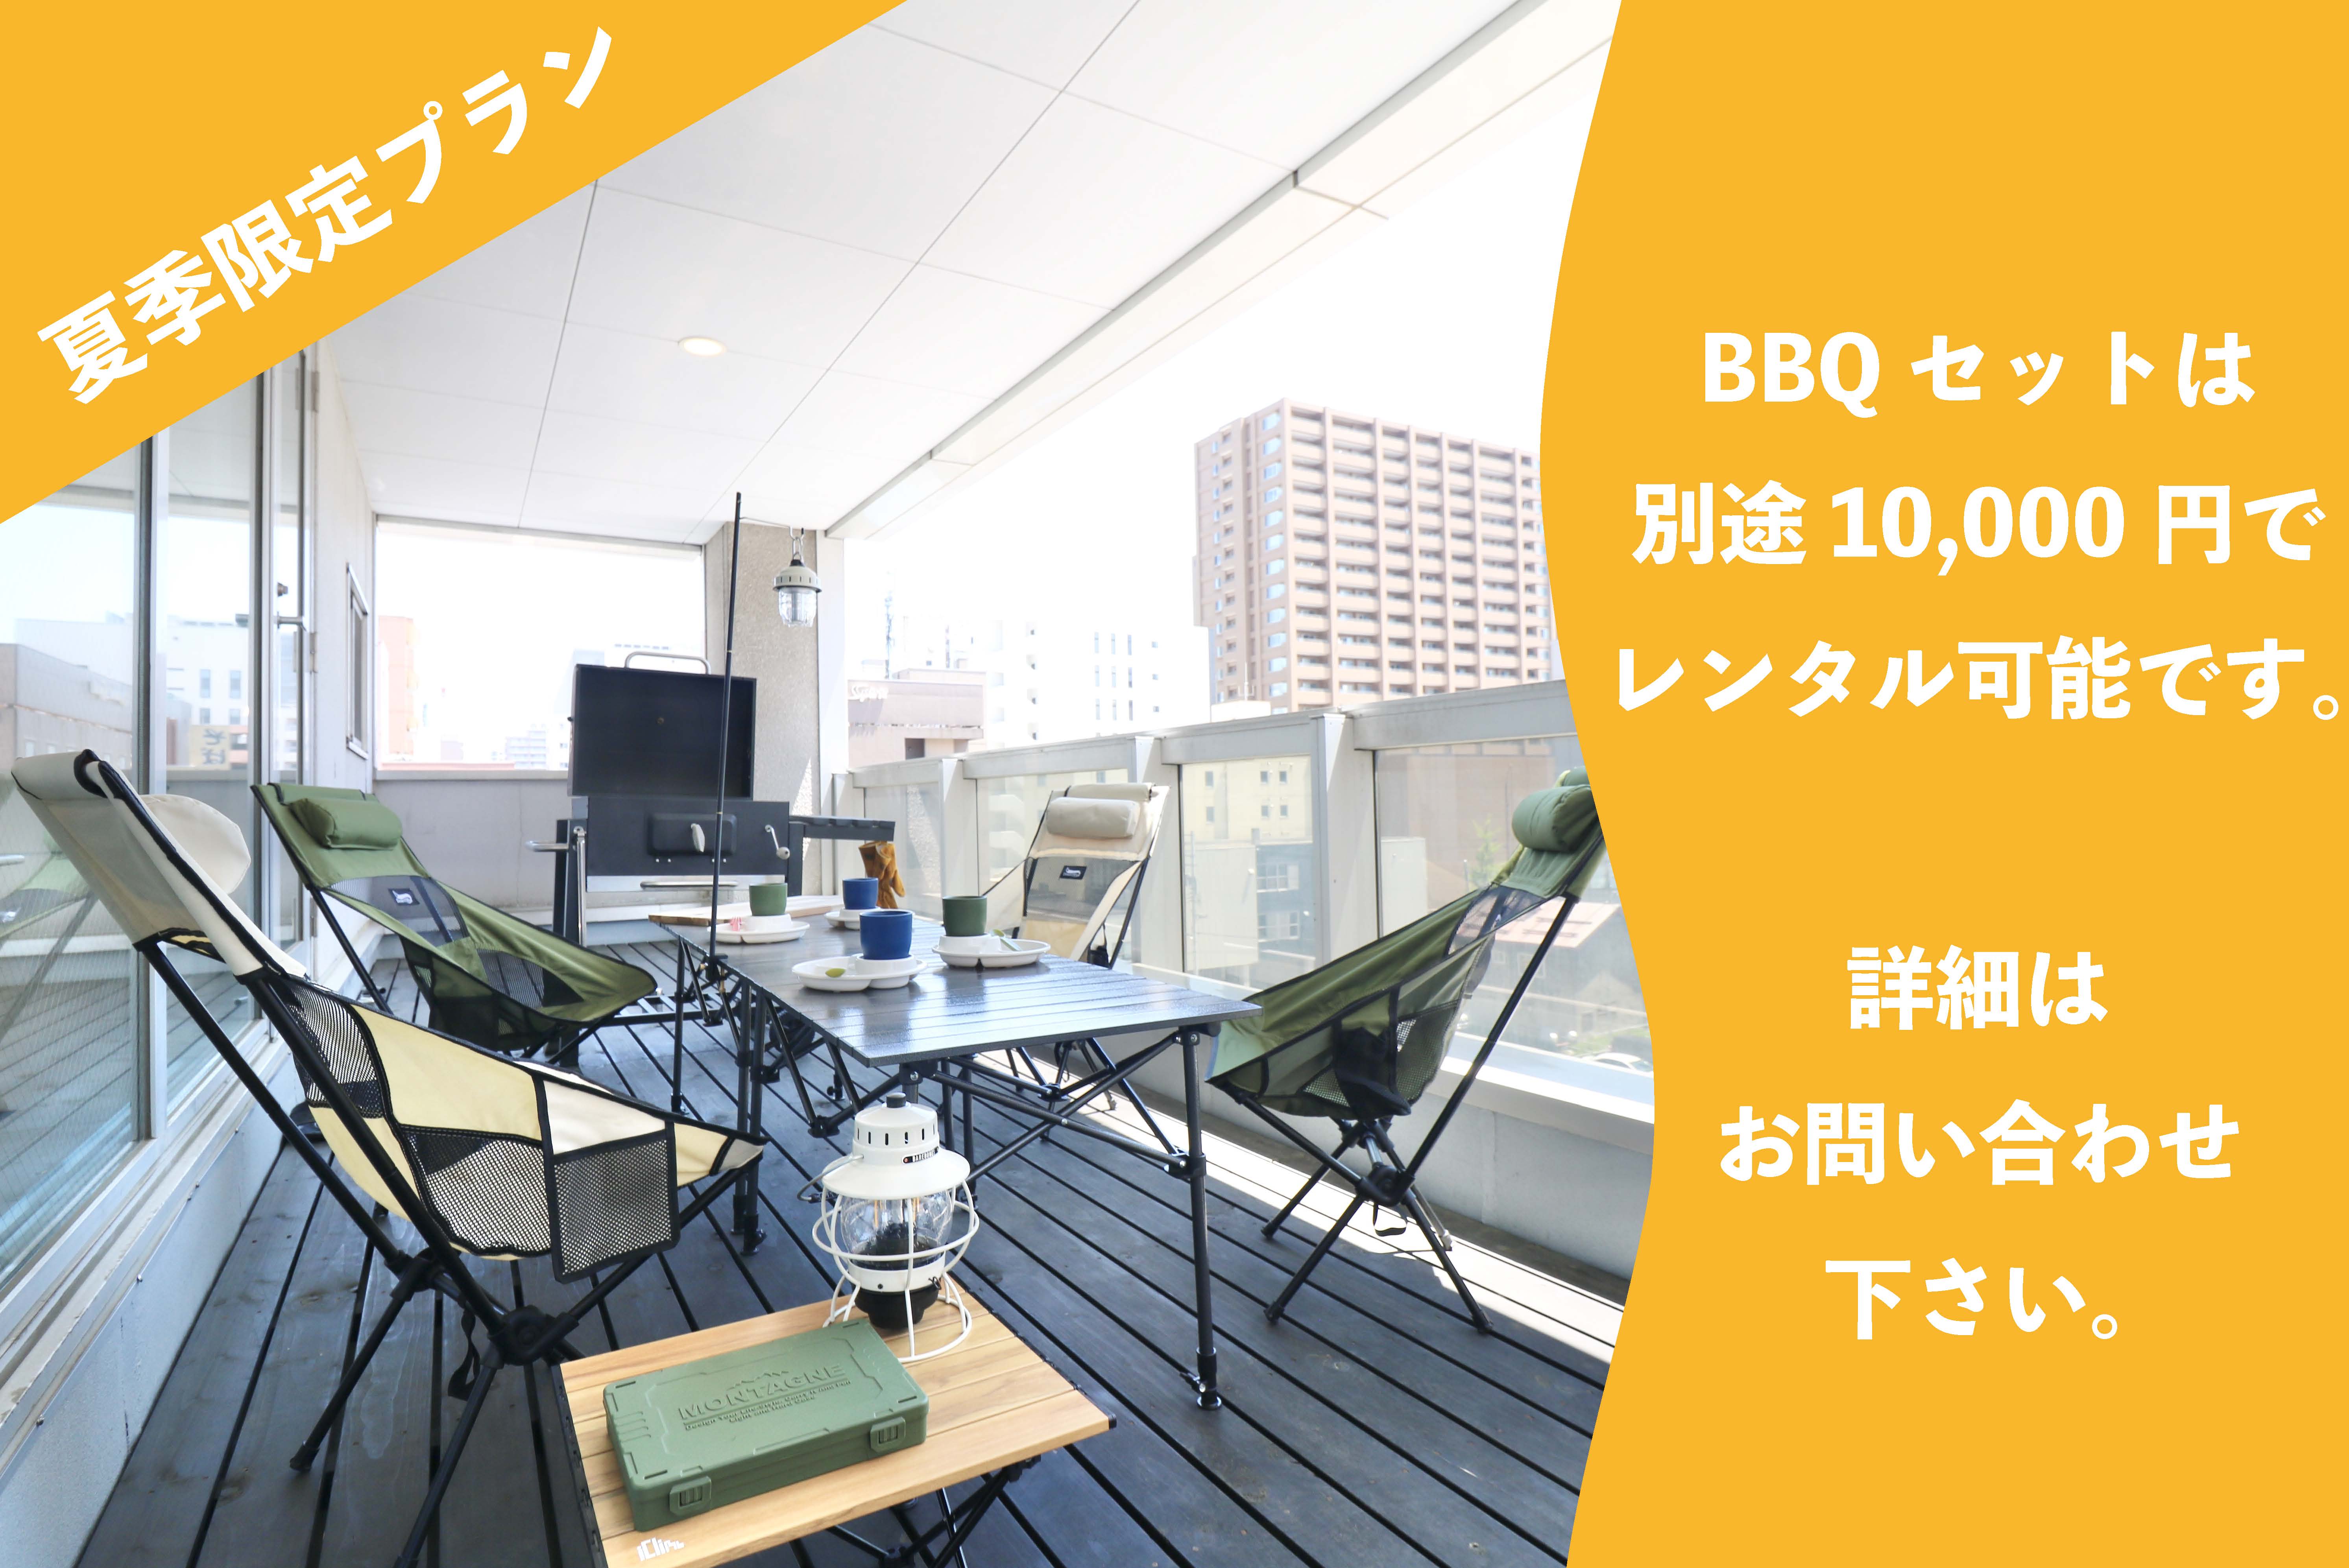 【夏季限定プラン】 BBQセットは別途10,000円でレンタル可能です。 詳細はお問い合わせください